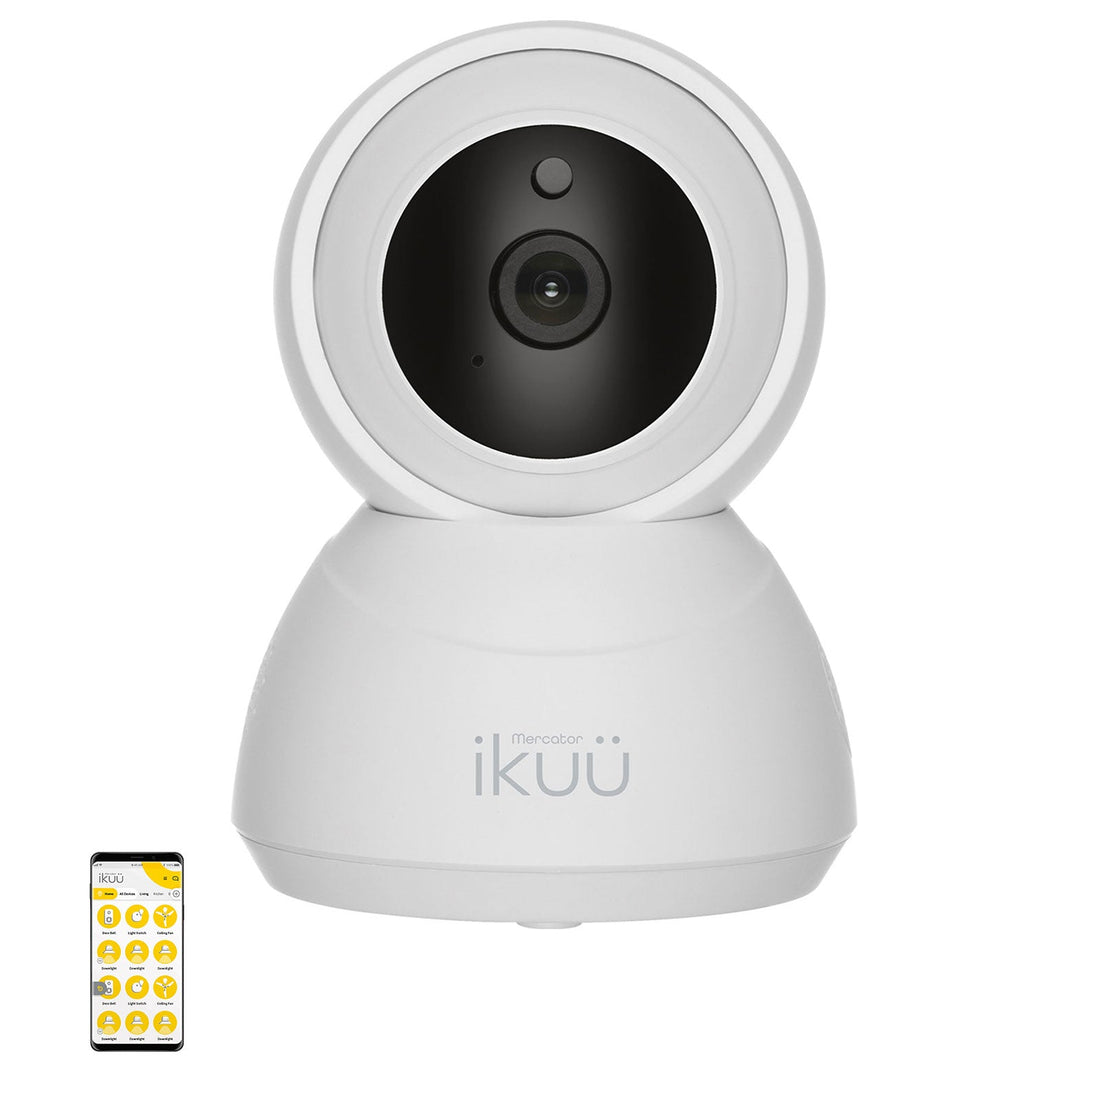 Ikuü Smart Wi-Fi Indoor Pan & Tilt Security Camera